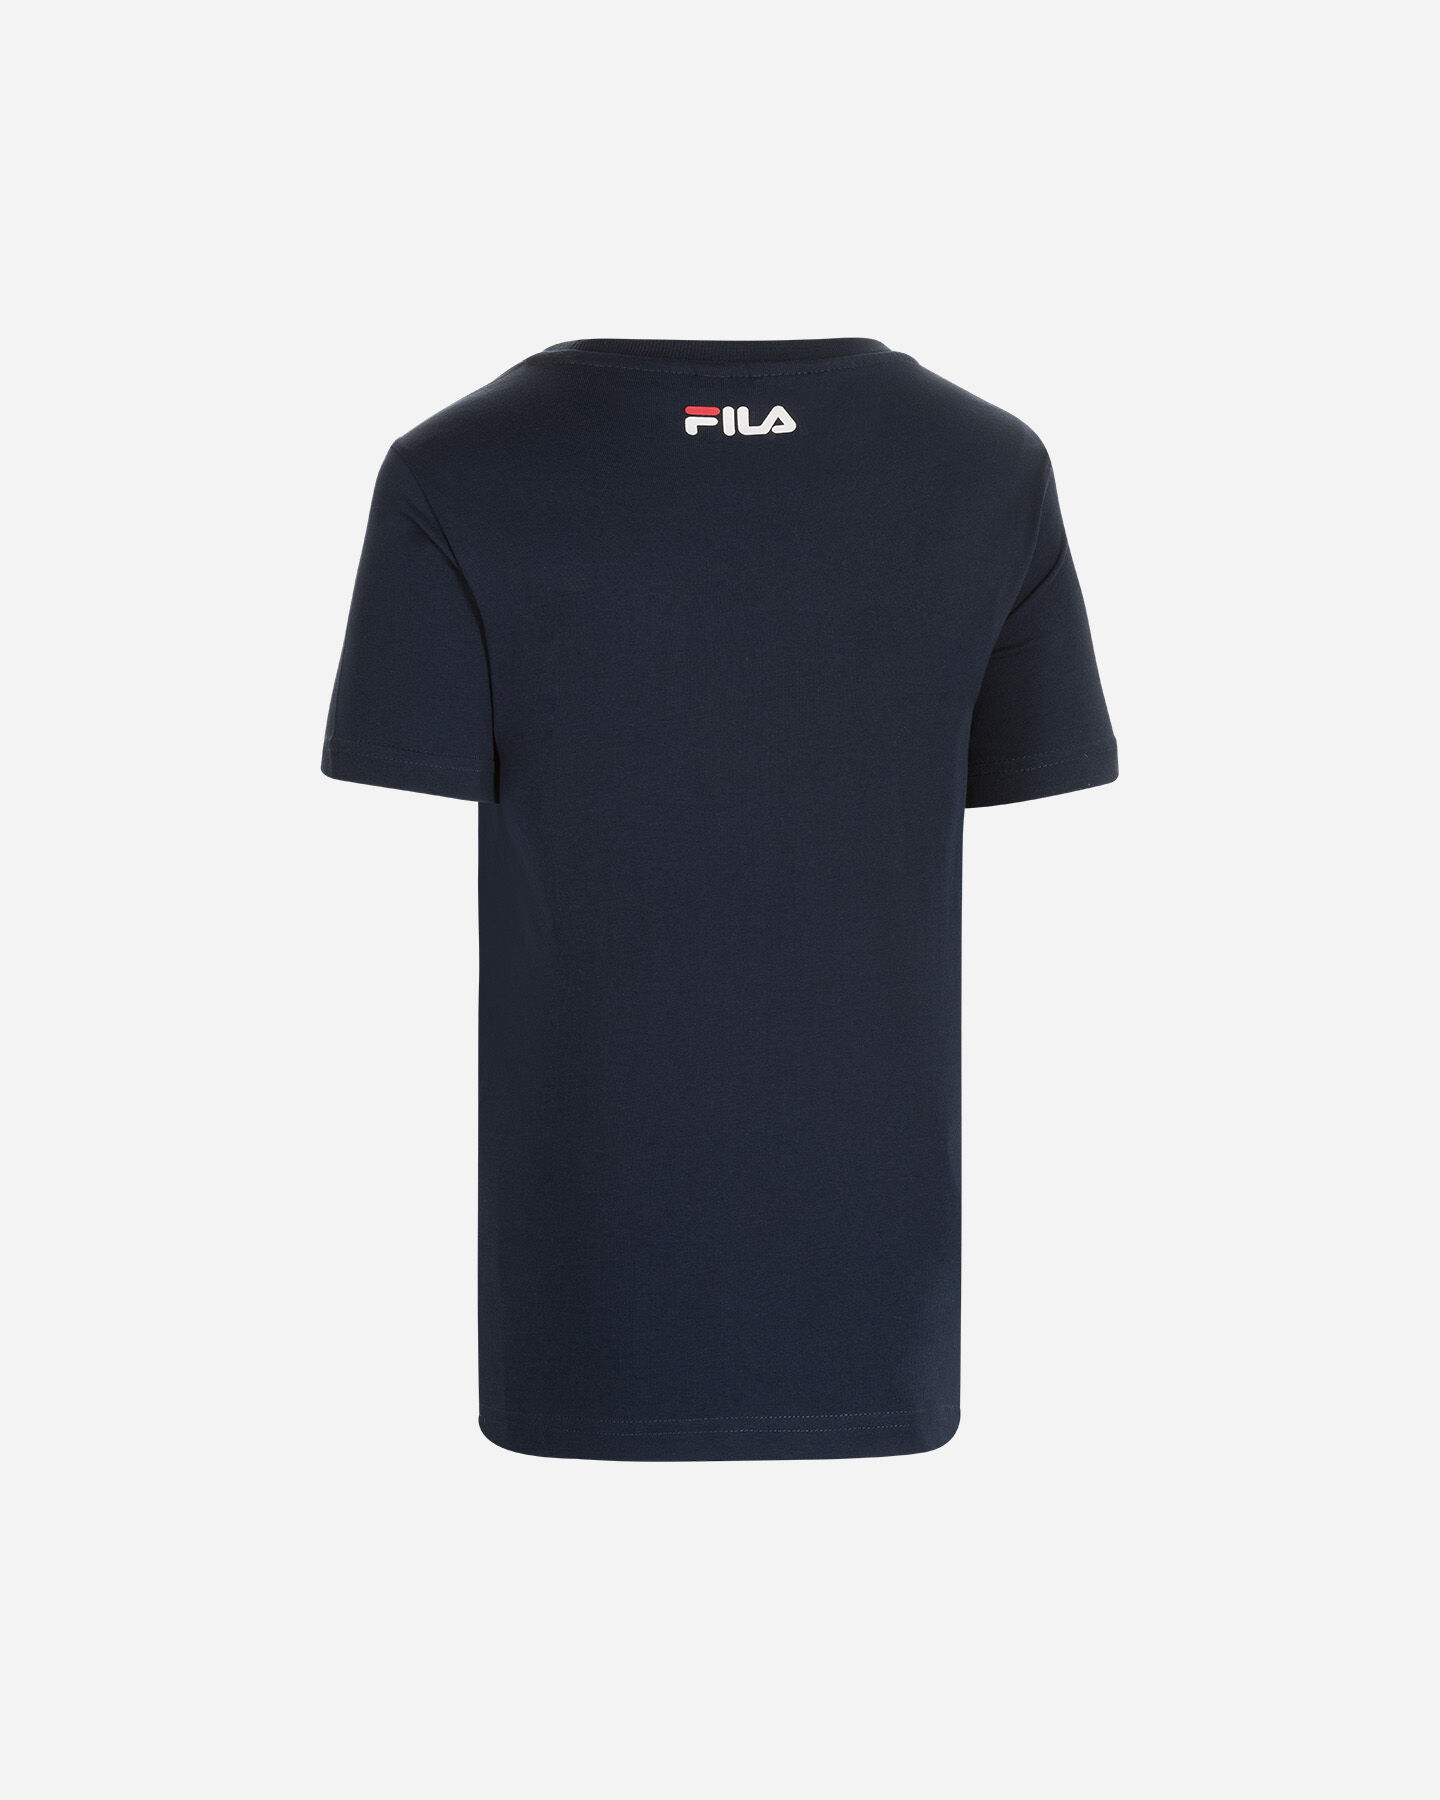  T-Shirt FILA SIMPLE BIG LOGO JR S4088600|519|4A scatto 1